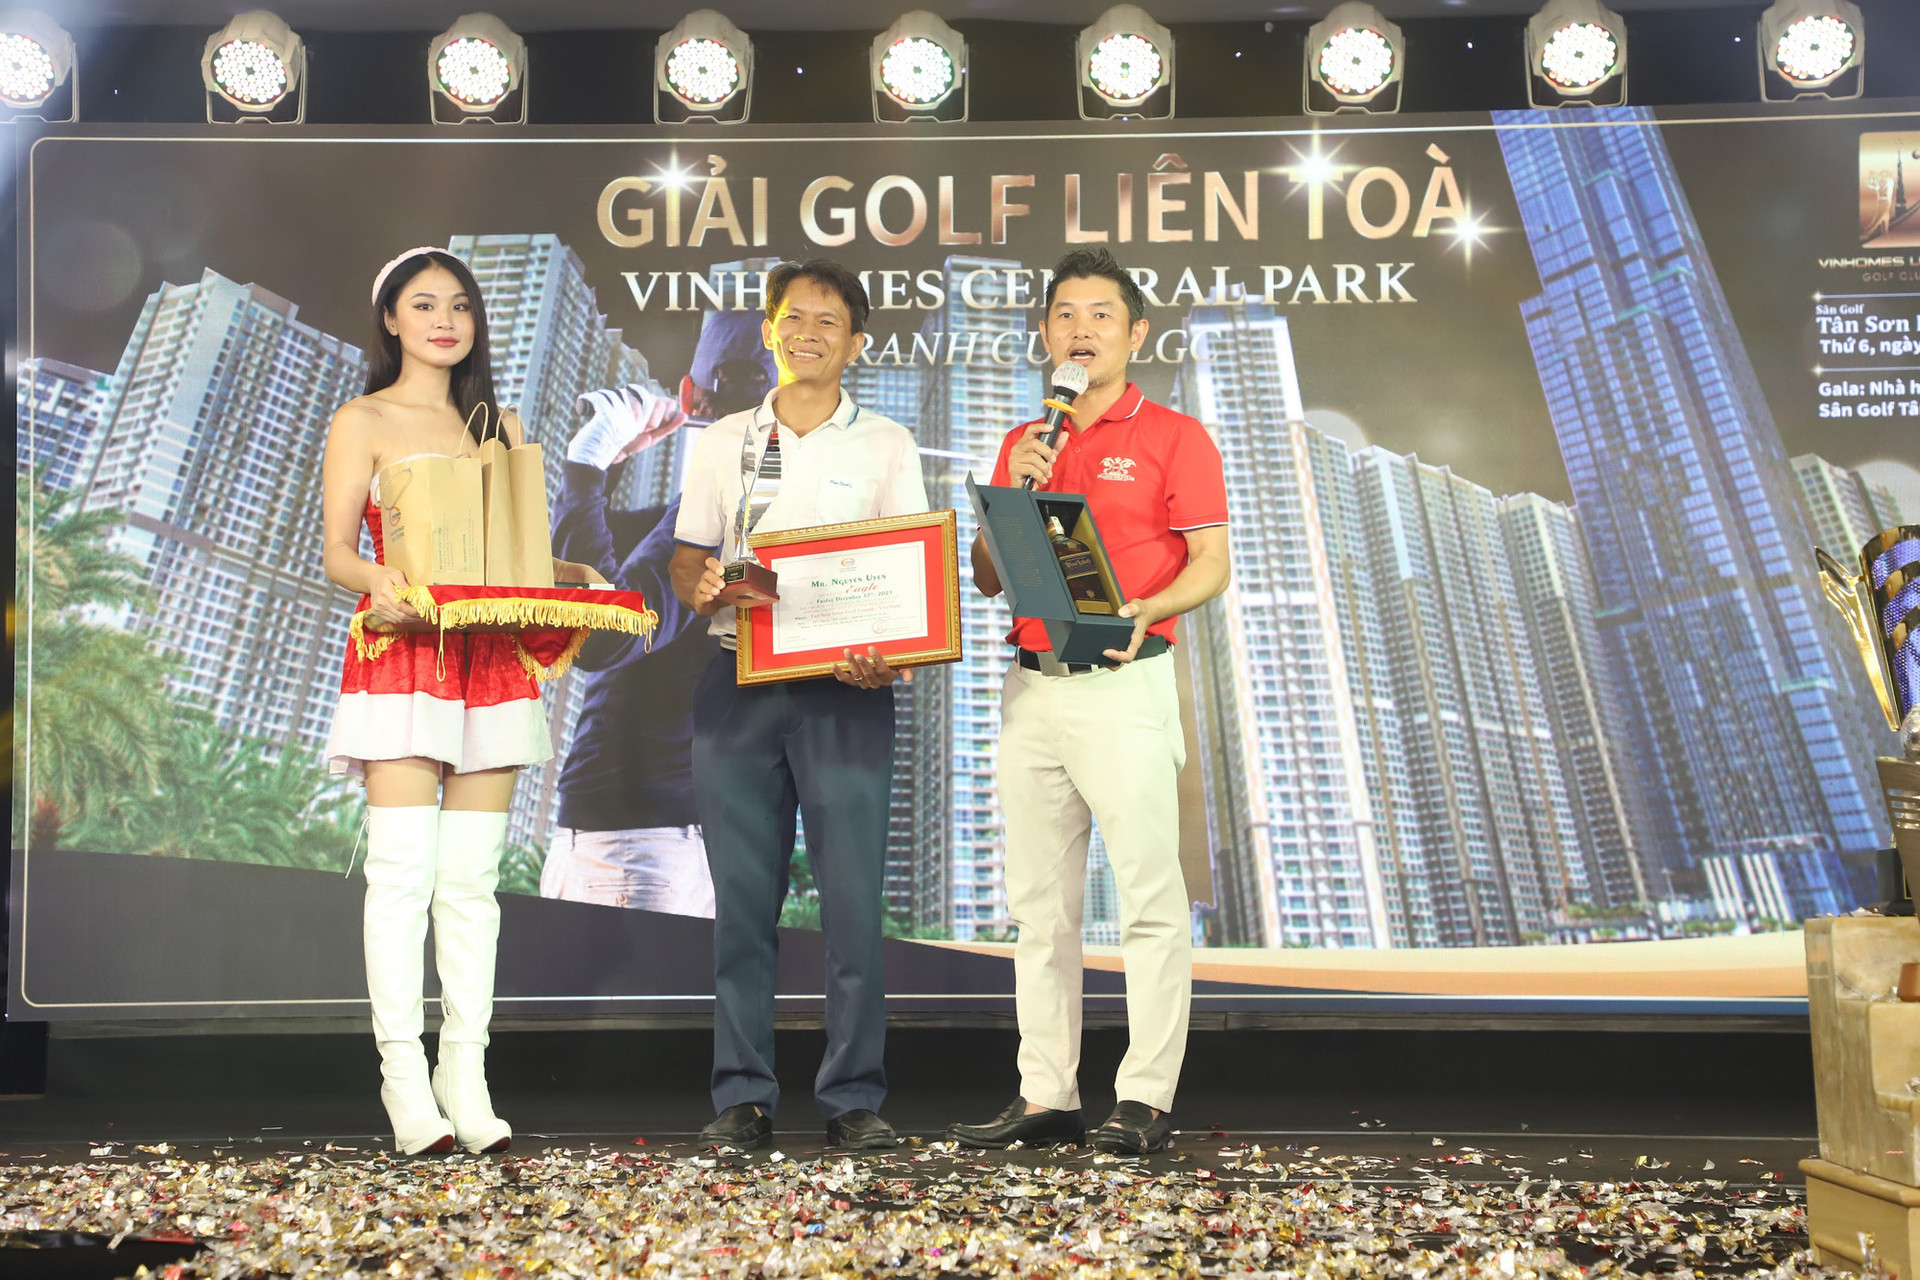 Golfer Andrew Hùng Phạm và Đội tuyển Park 2 giành cúp tại Giải golf Liên Tòa Nhà Vinhomes Central Park Tranh cúp Vô Địch VLGC - Ảnh 6.